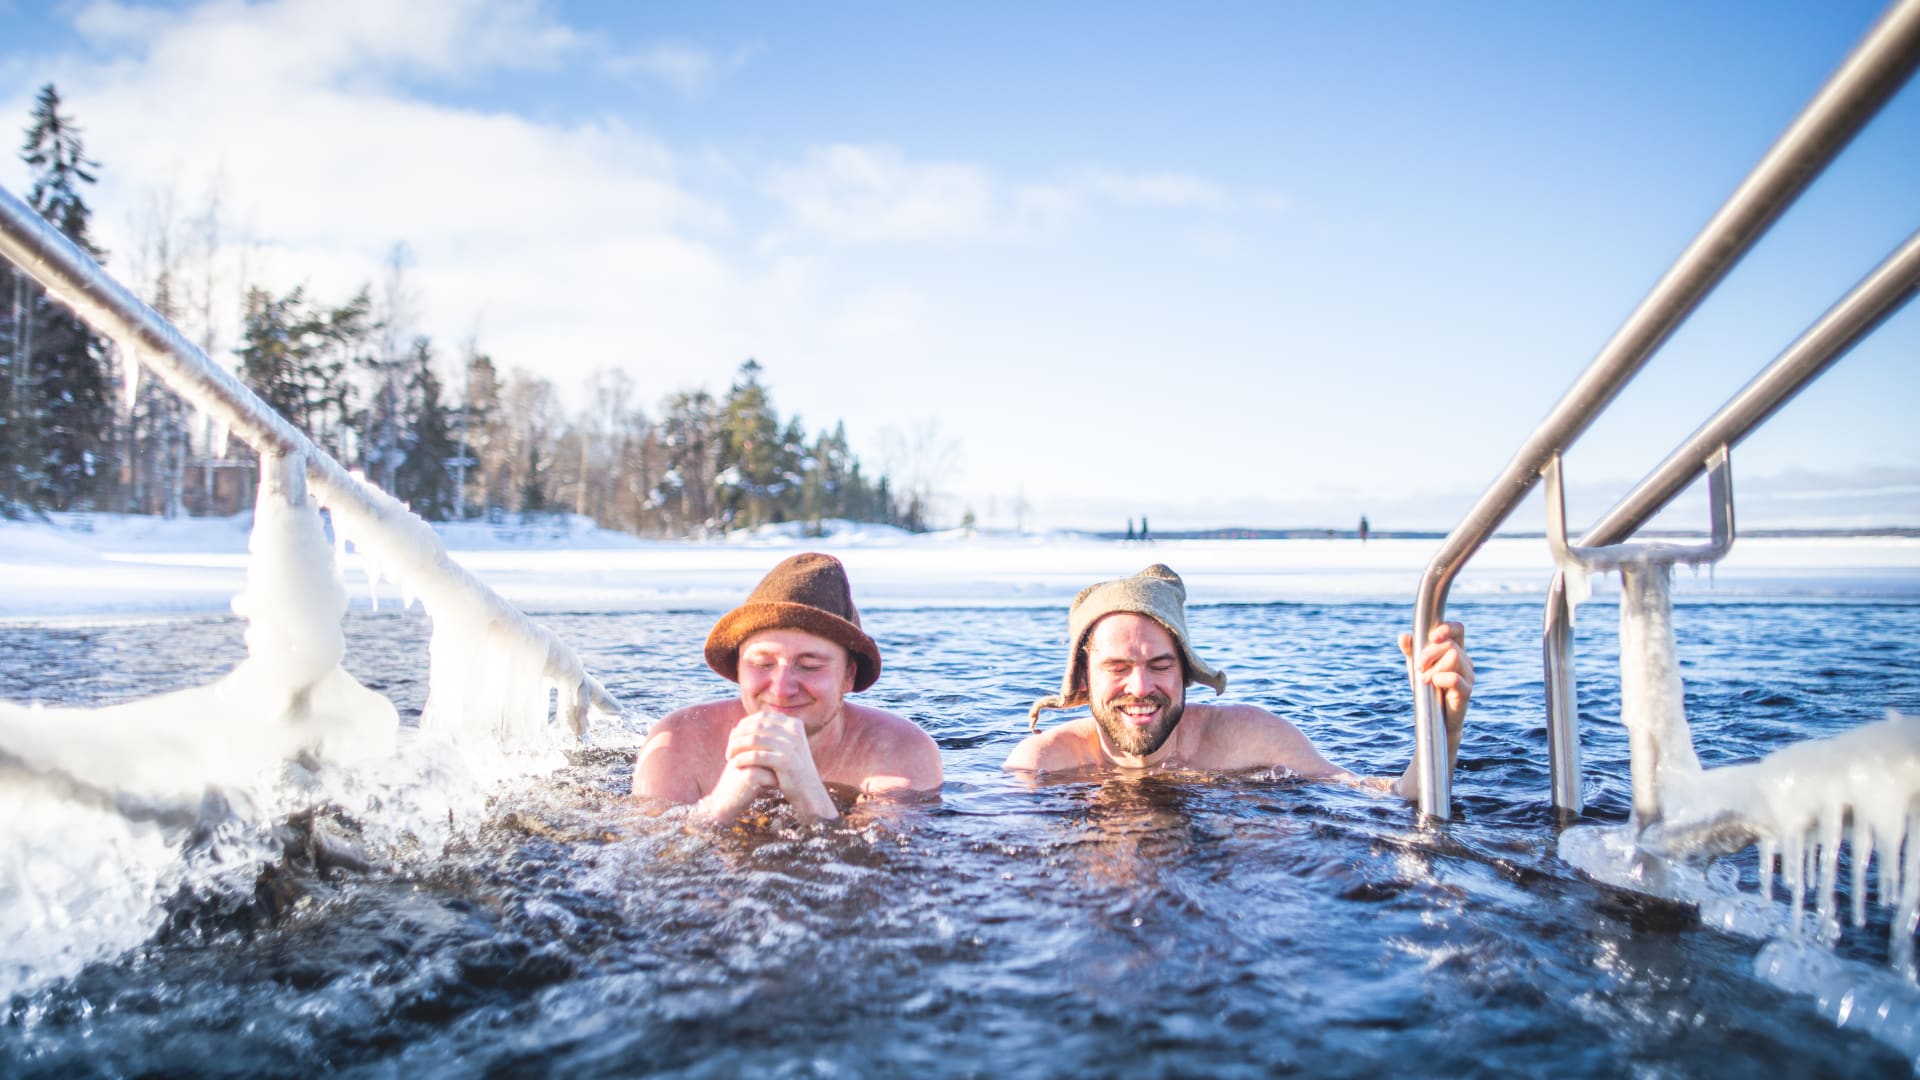 Matti and Juha winter swimming in Rauhaniemi.